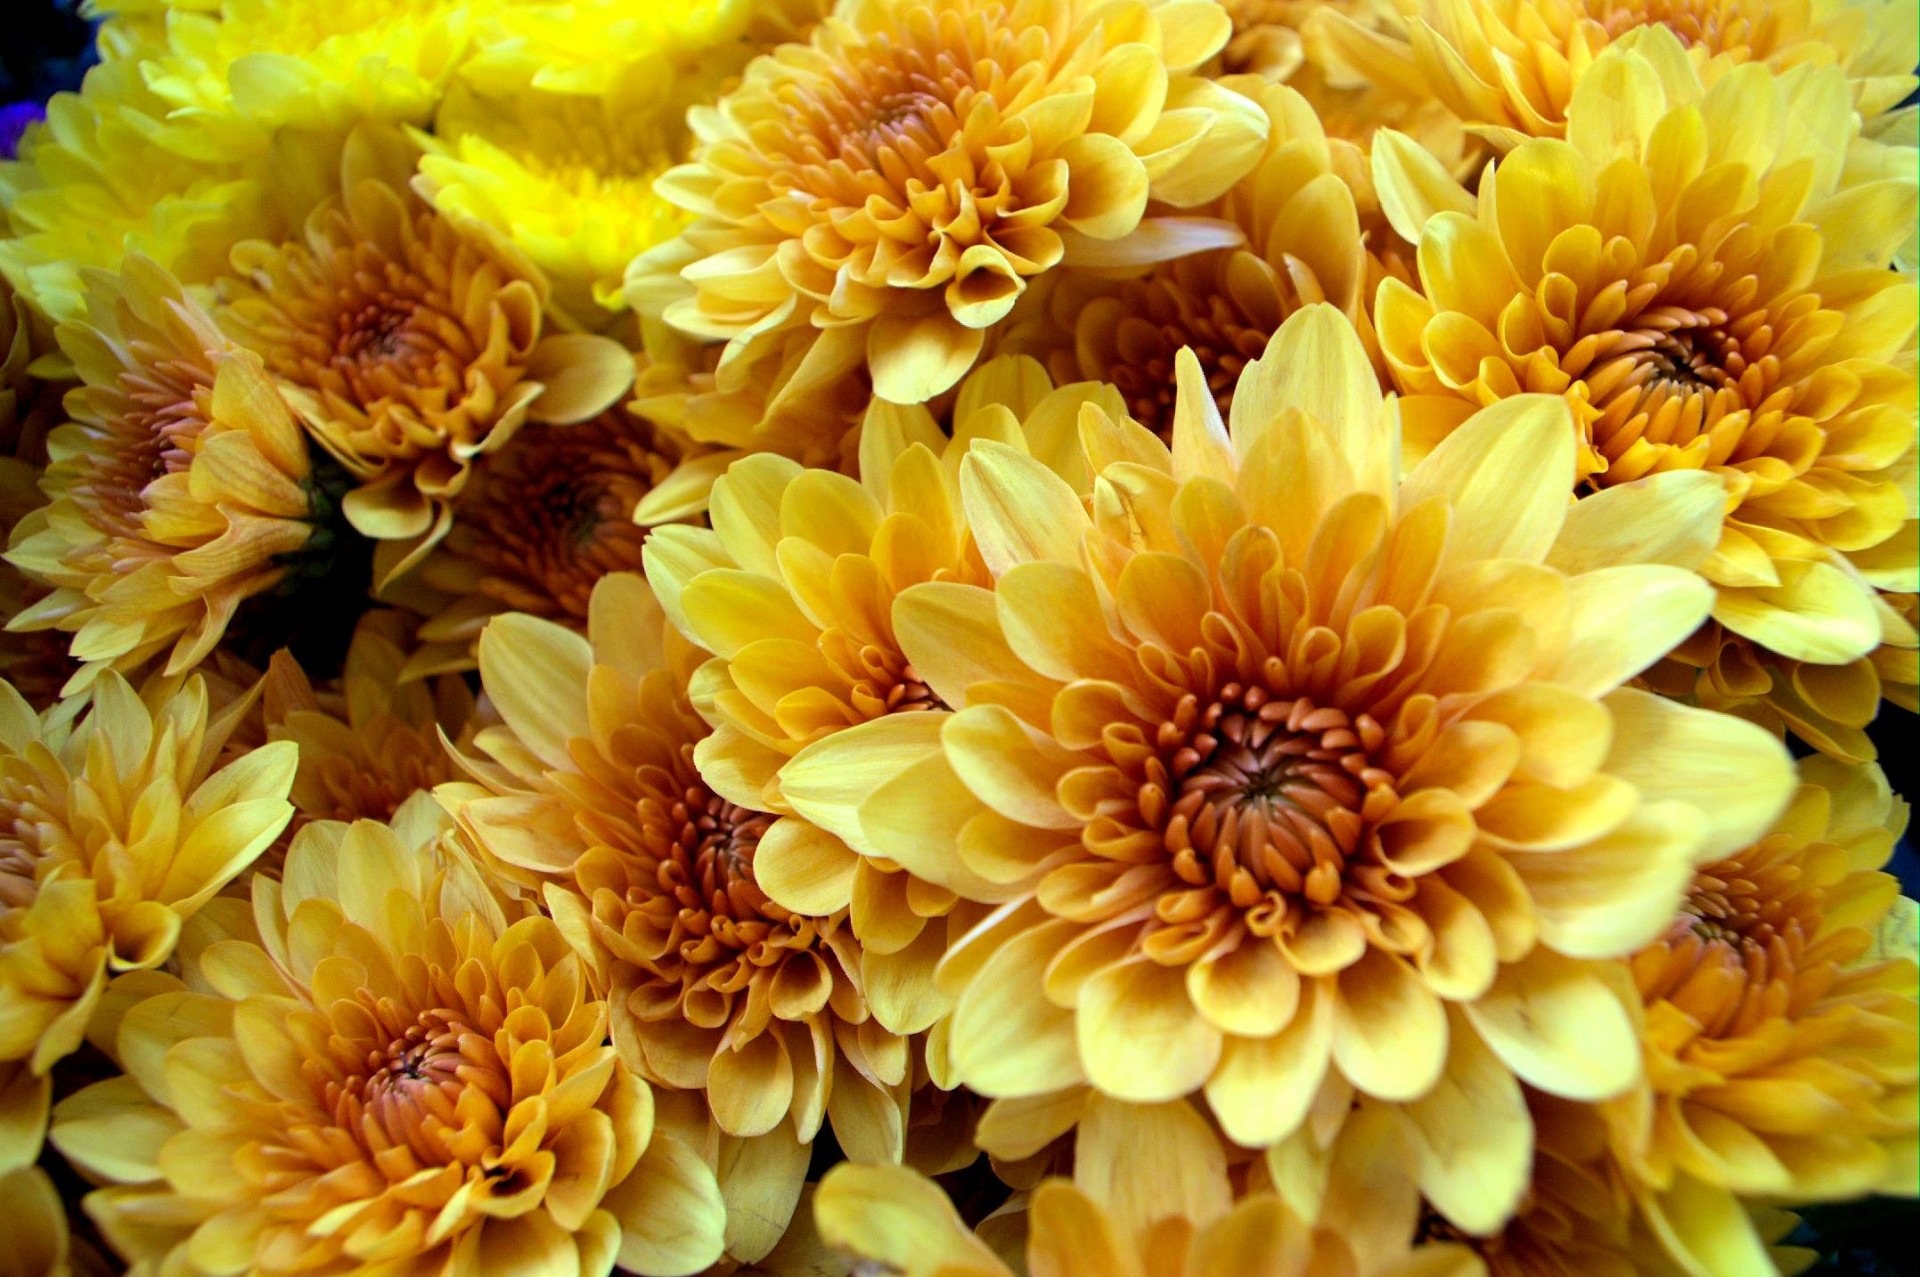 yellow chrysanthemum beautiful free photo